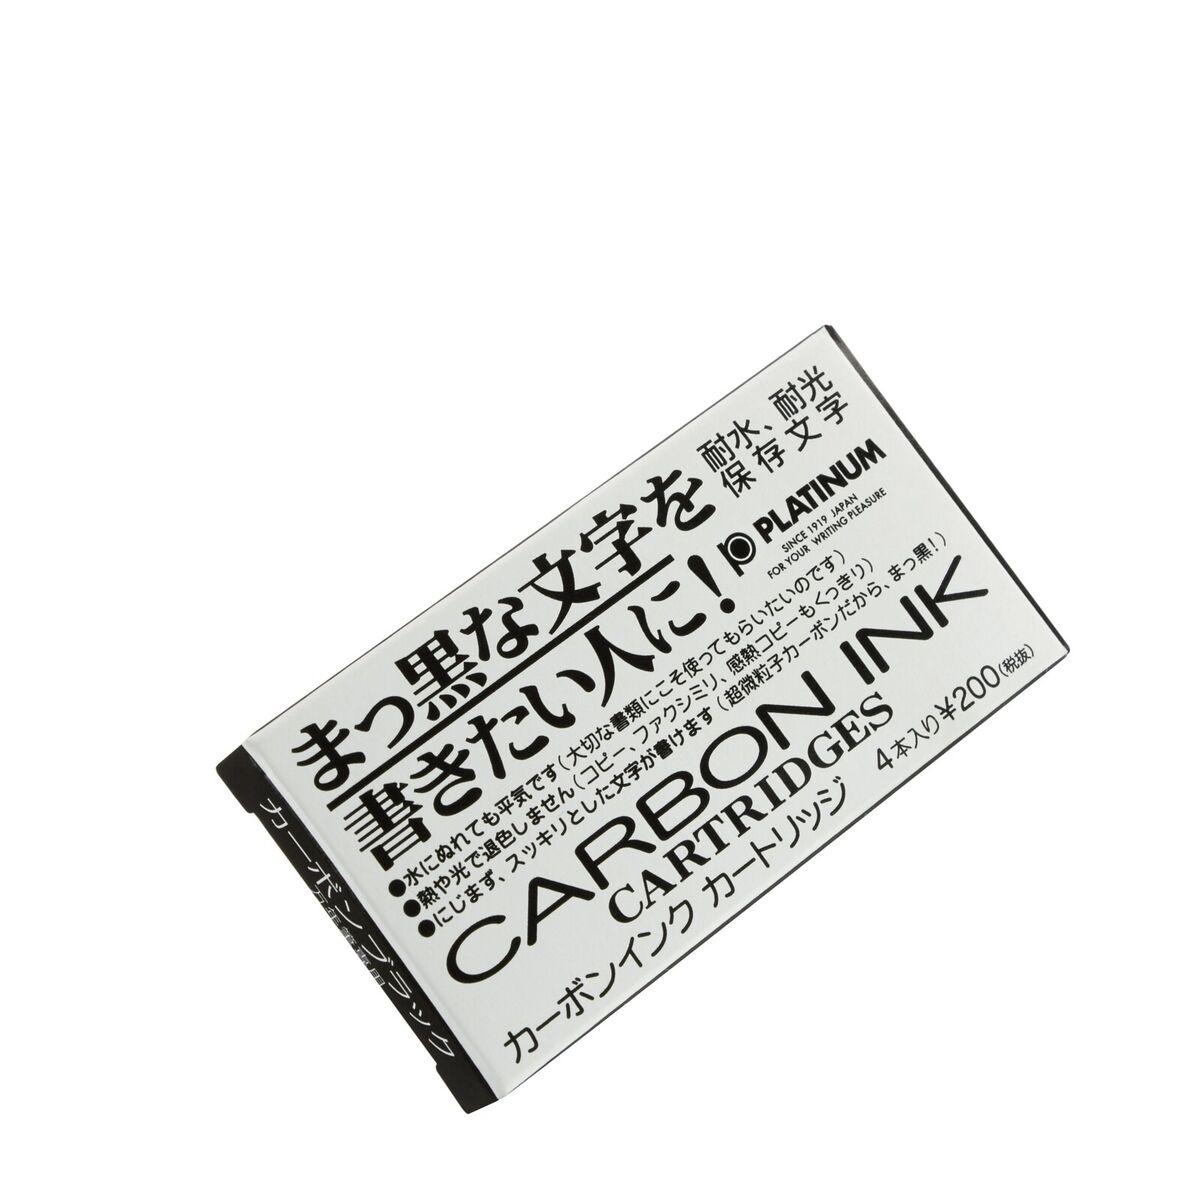 Platinum Carbon Black 60cc Ink Bottle or Carbon Ink Cartridges - UK SELLER